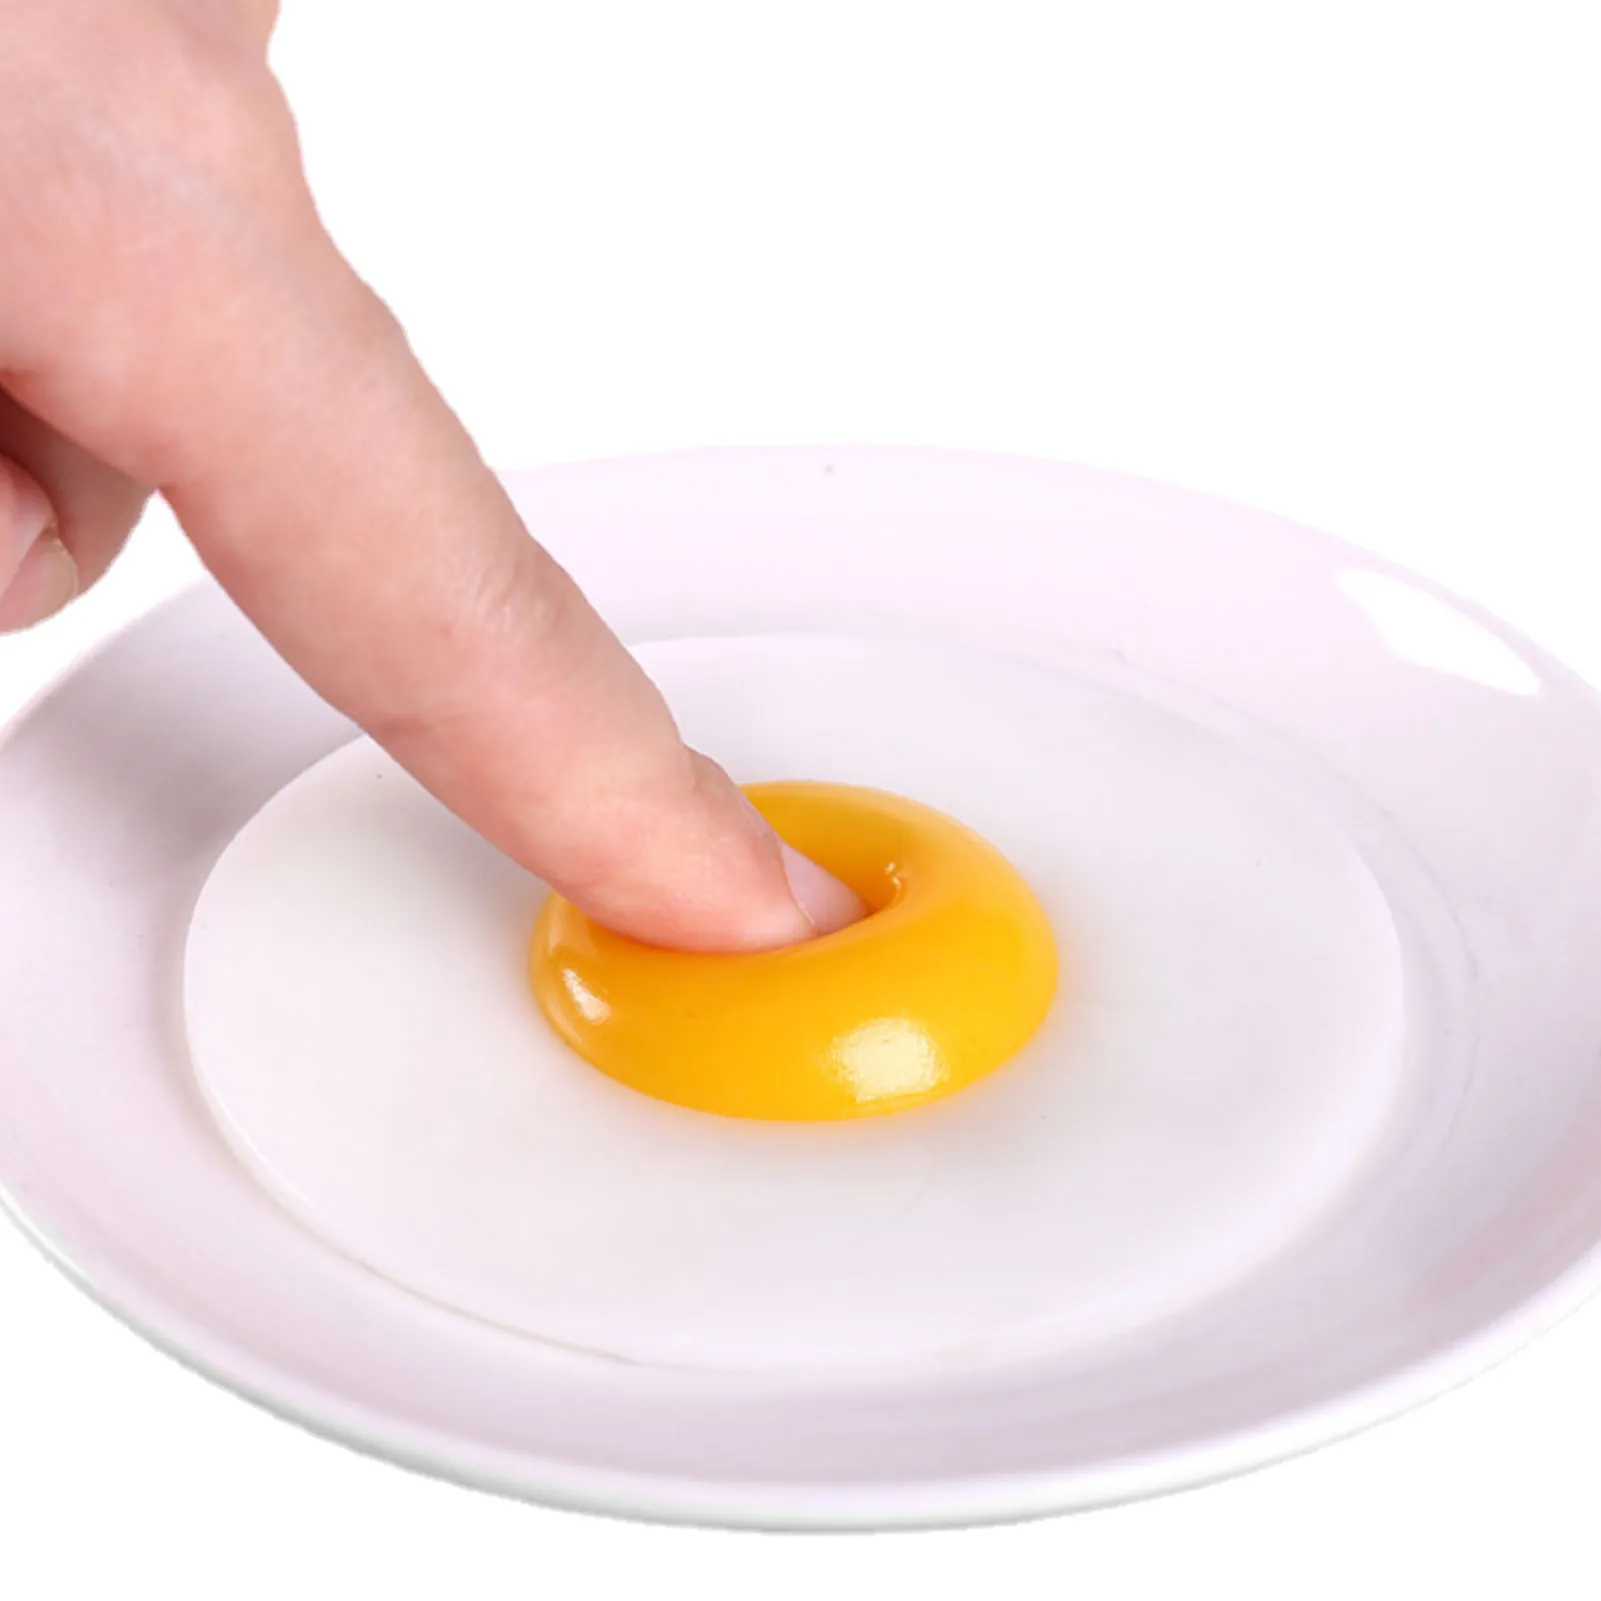 Yeni Oyunlar Yapışkan TPR Kauçuk Yumurta Sıkmak Mutfak Gıda Oyuncak Oyna Pretend Yemek Pişirme Kızarmış Yumurta Omlet Geyik Şaka Çocuklar Stres Rahatlatmak Oyuncaklar 1227